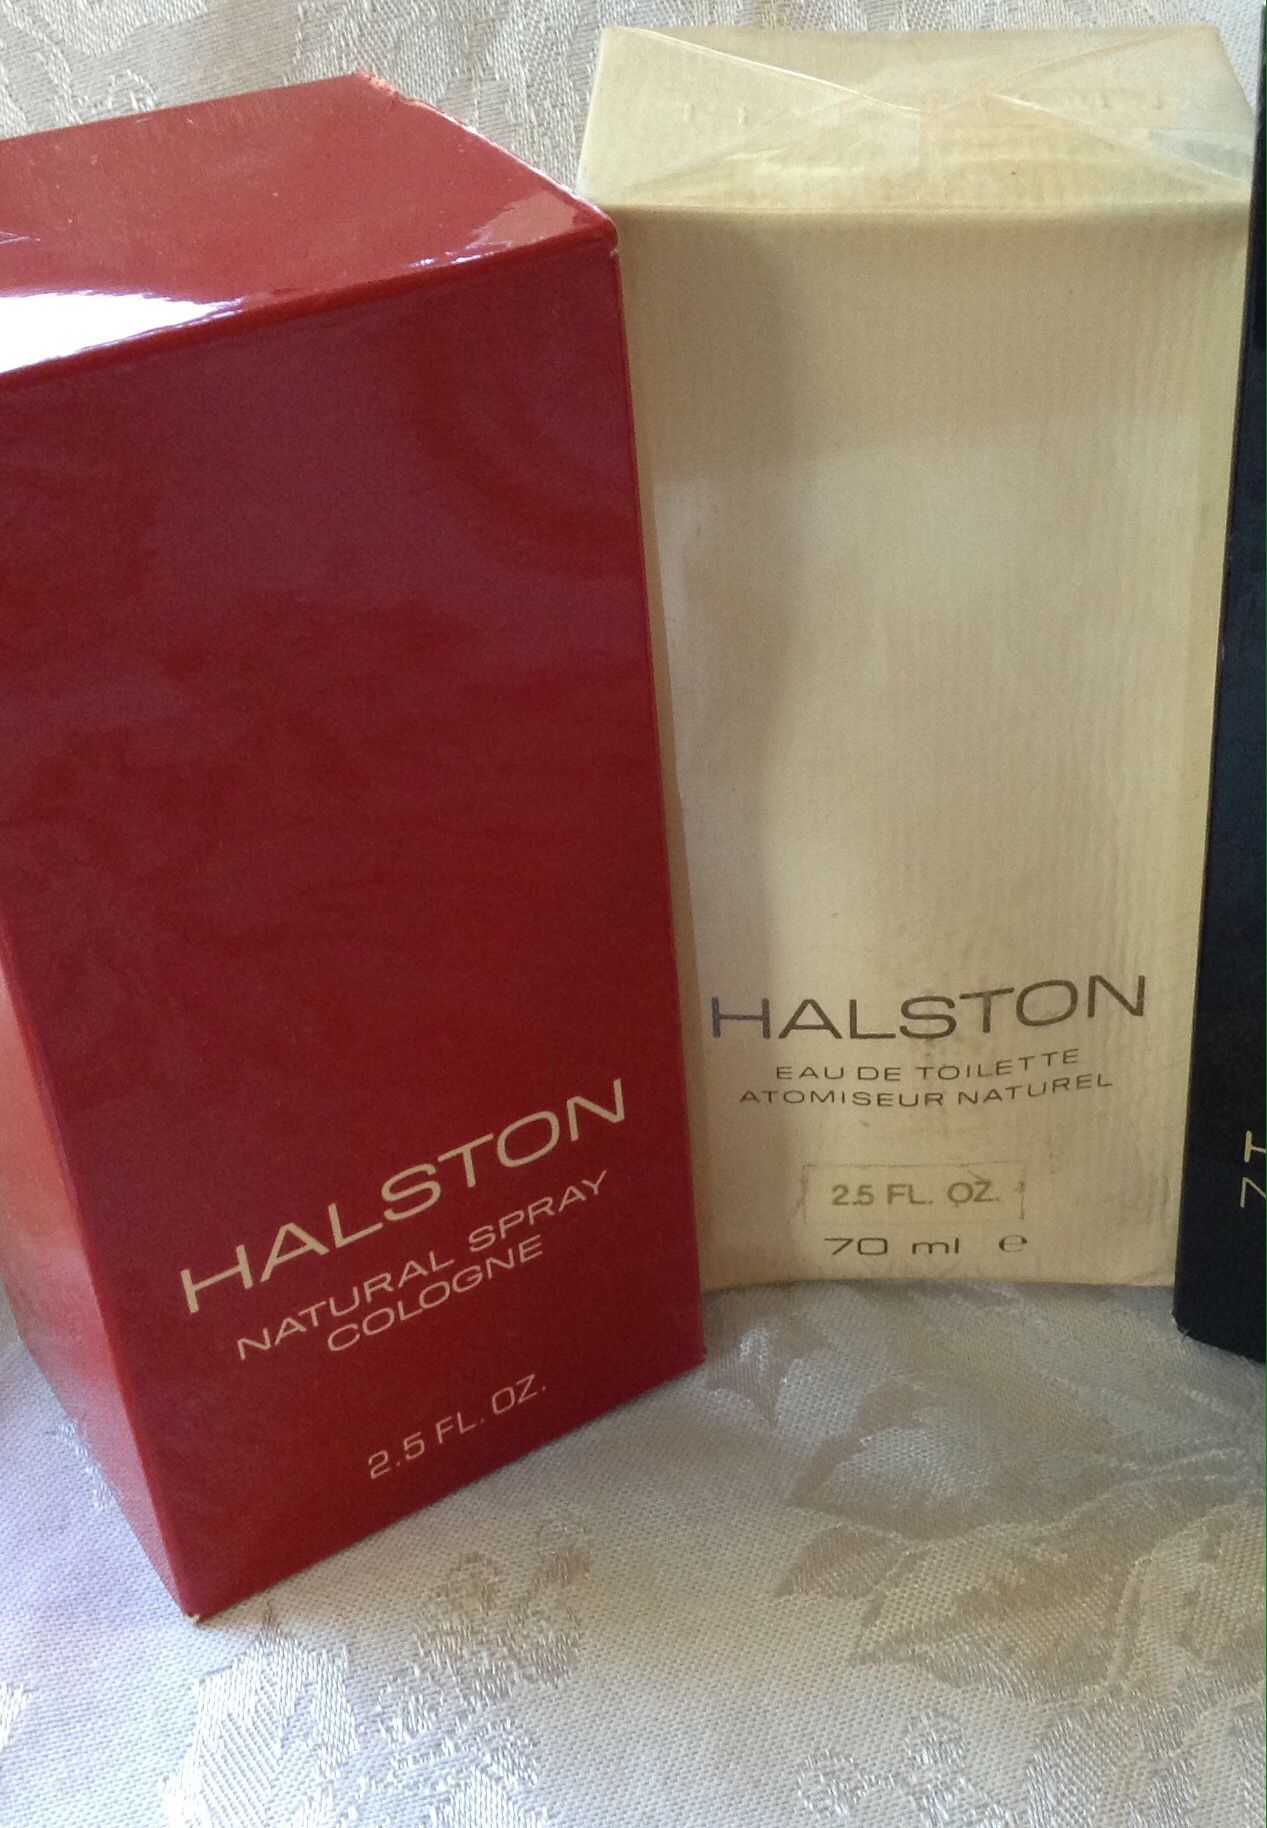 Halston fragrances 2.5 FL oz. Natural spray cologne OR orig scent Eau de toilette